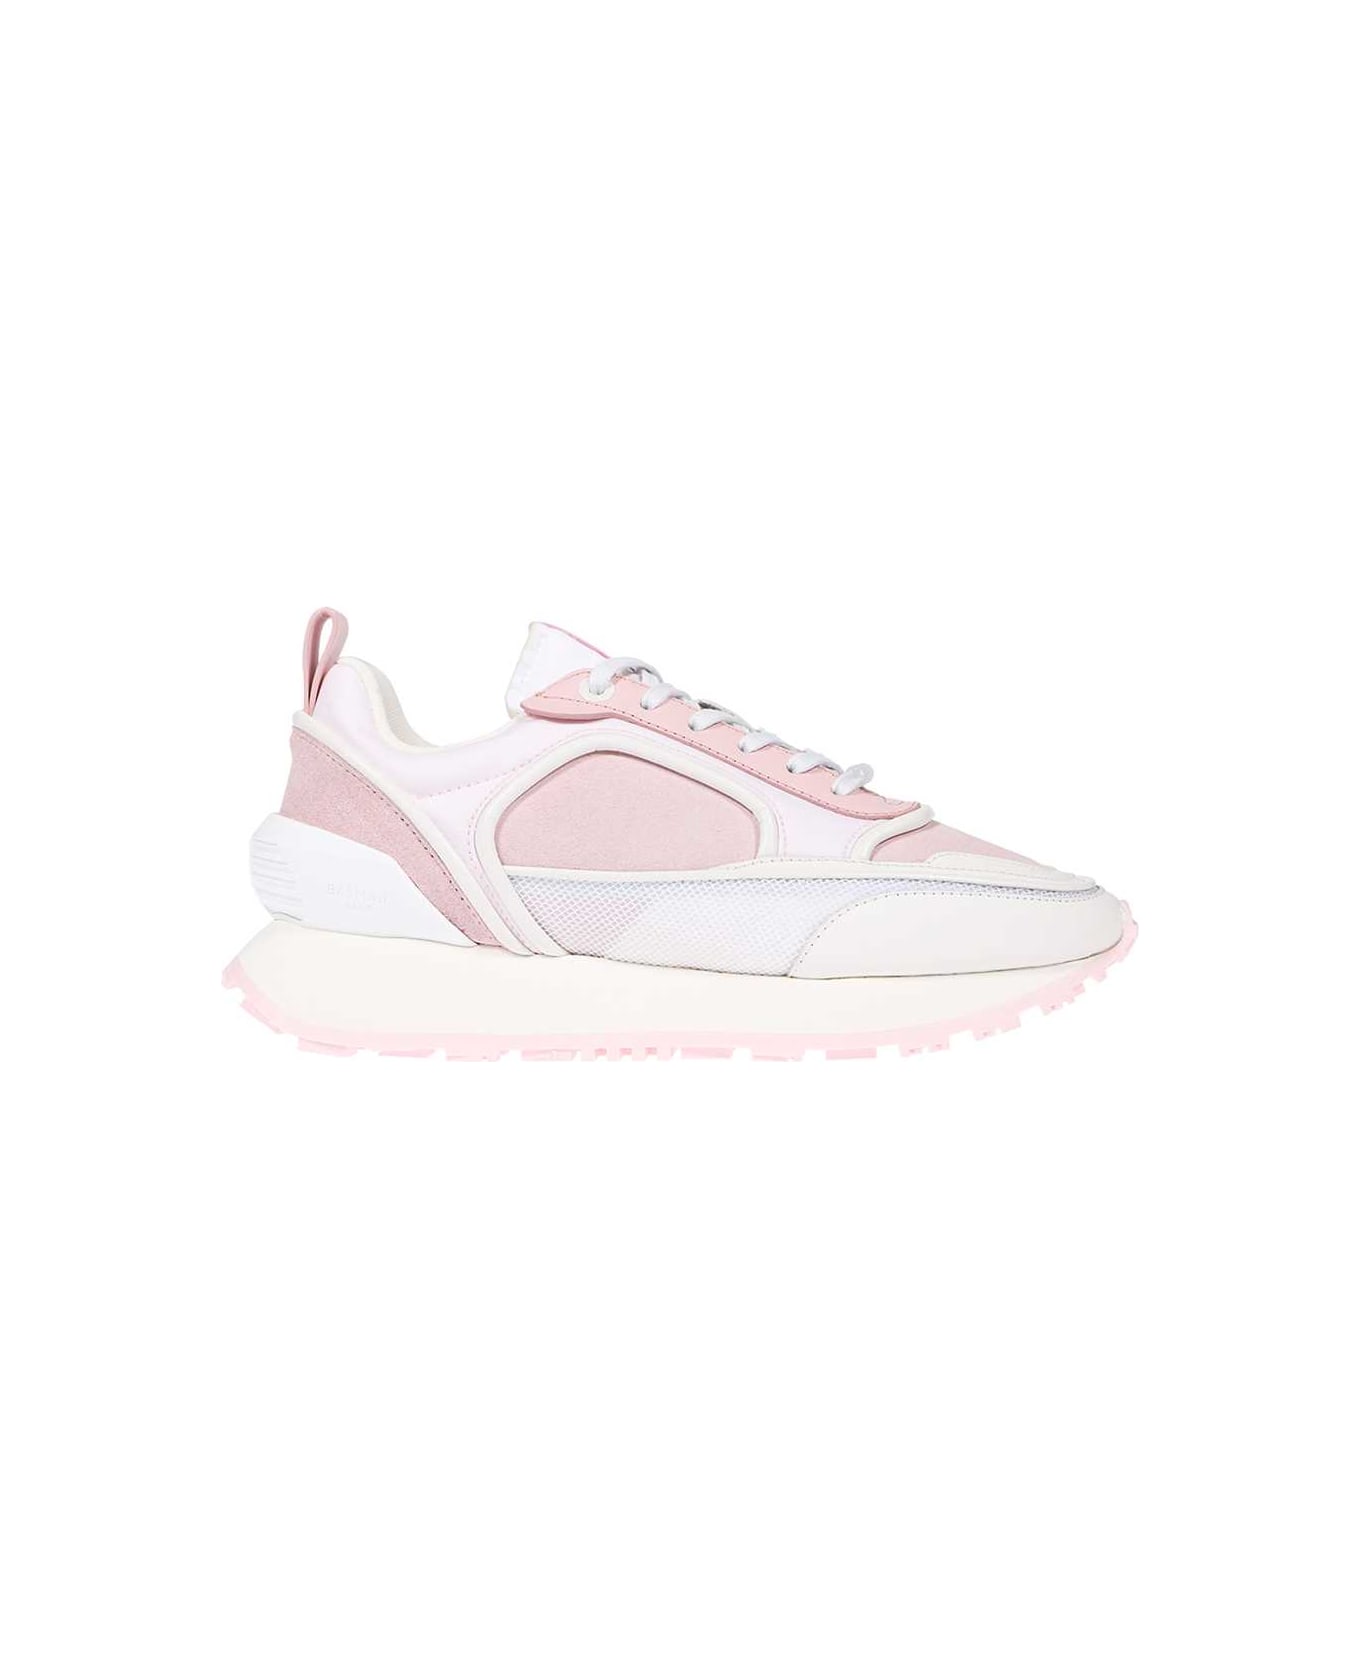 Balmain Low-top Sneakers - Pink スニーカー